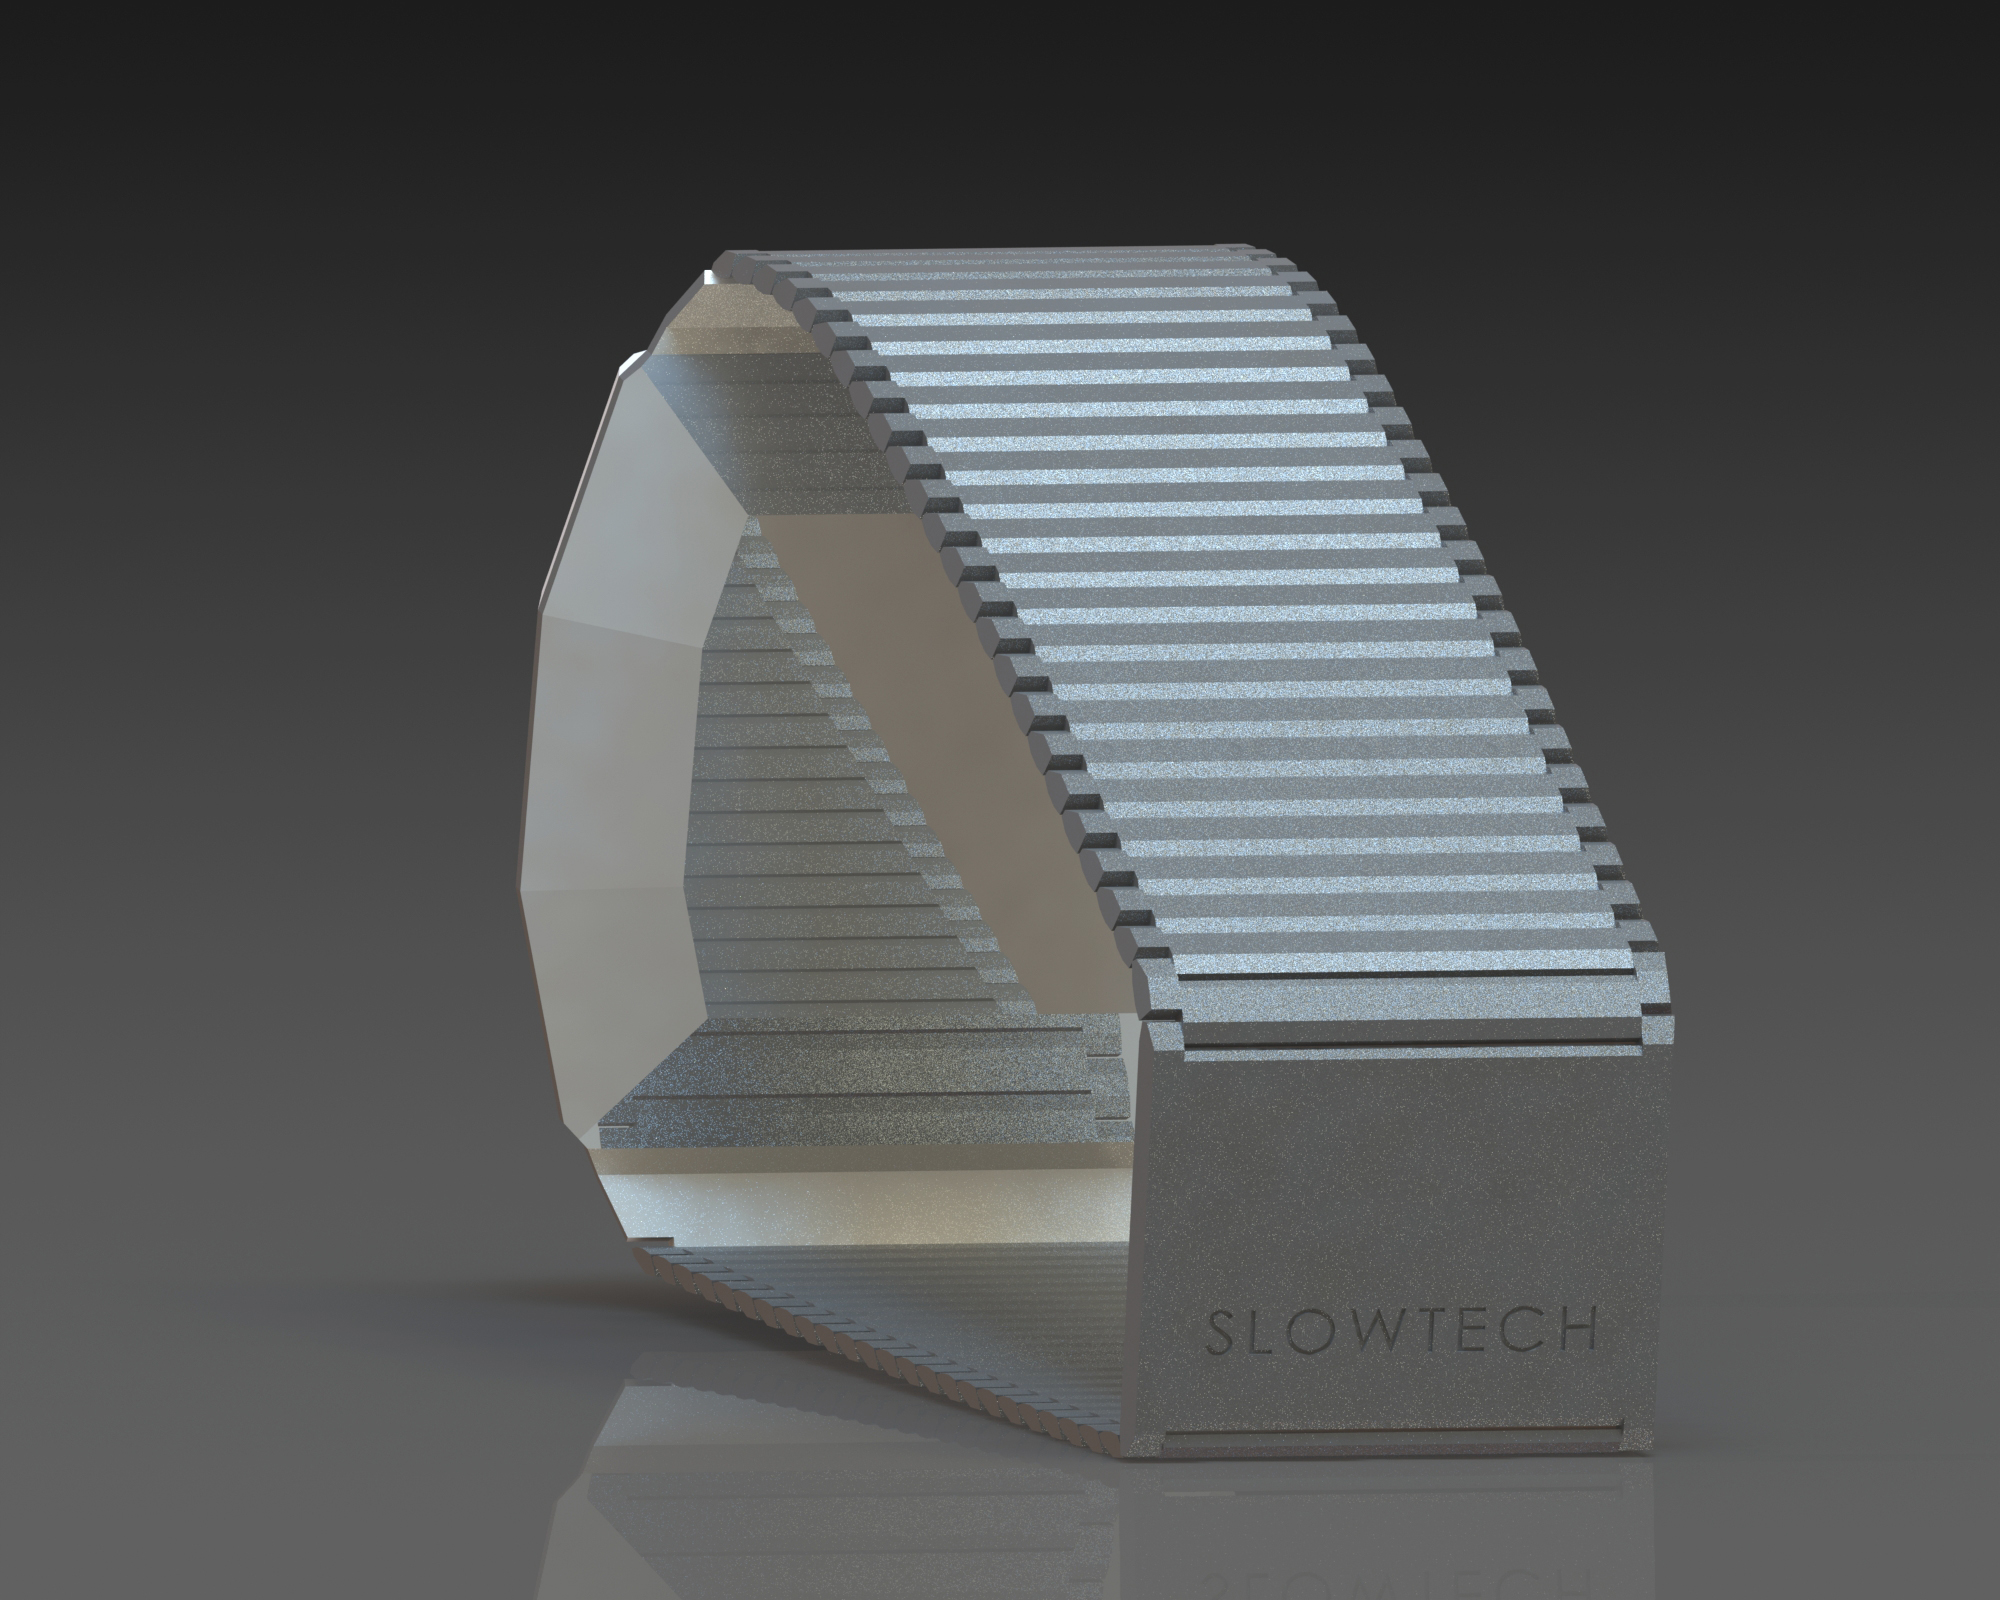 Wristwatch render in CAD, Slowtech by Sebastian Galo